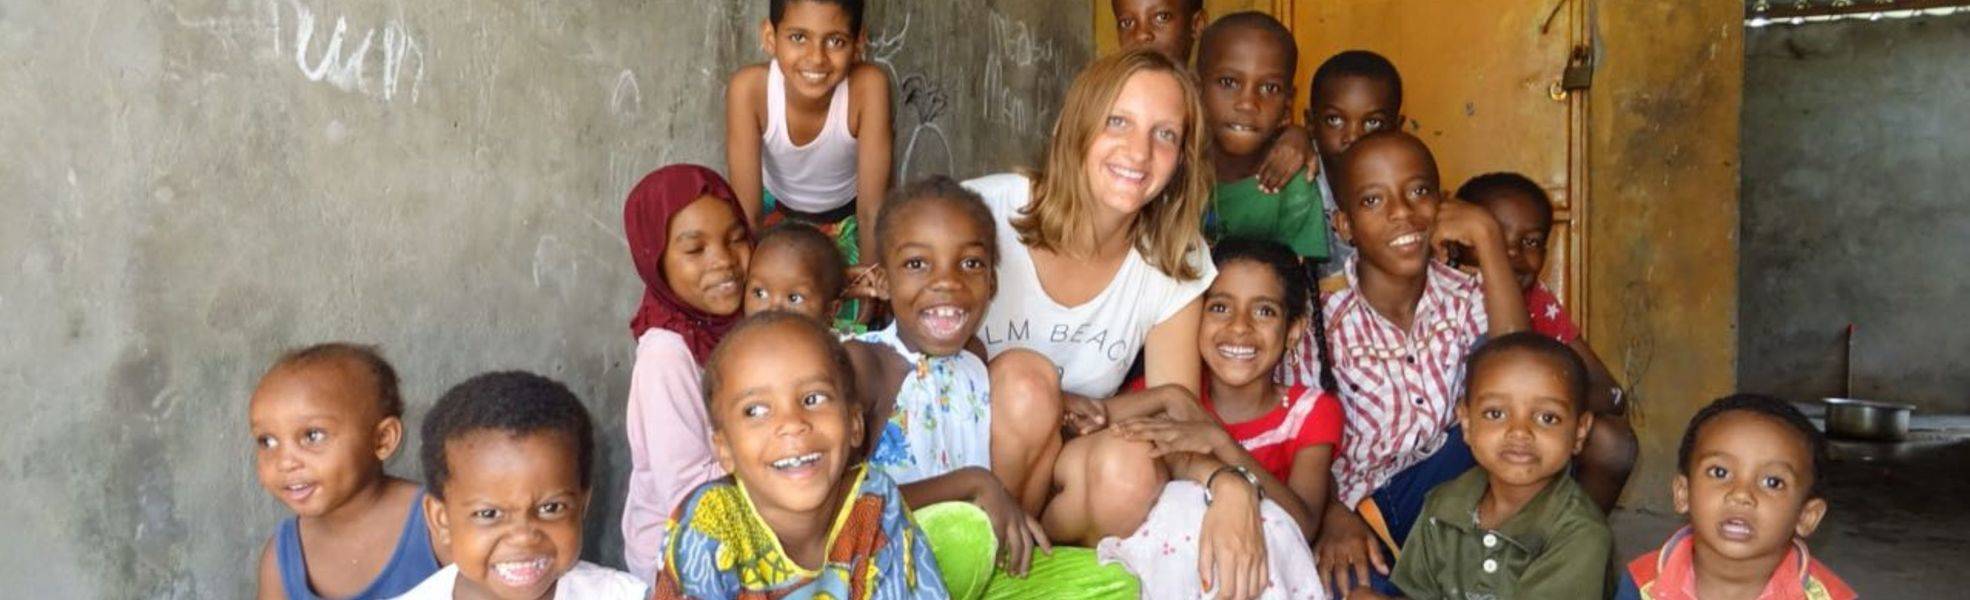 Volunteer absolviert ihr Auslandspraktikum in Afrika mit Kindern